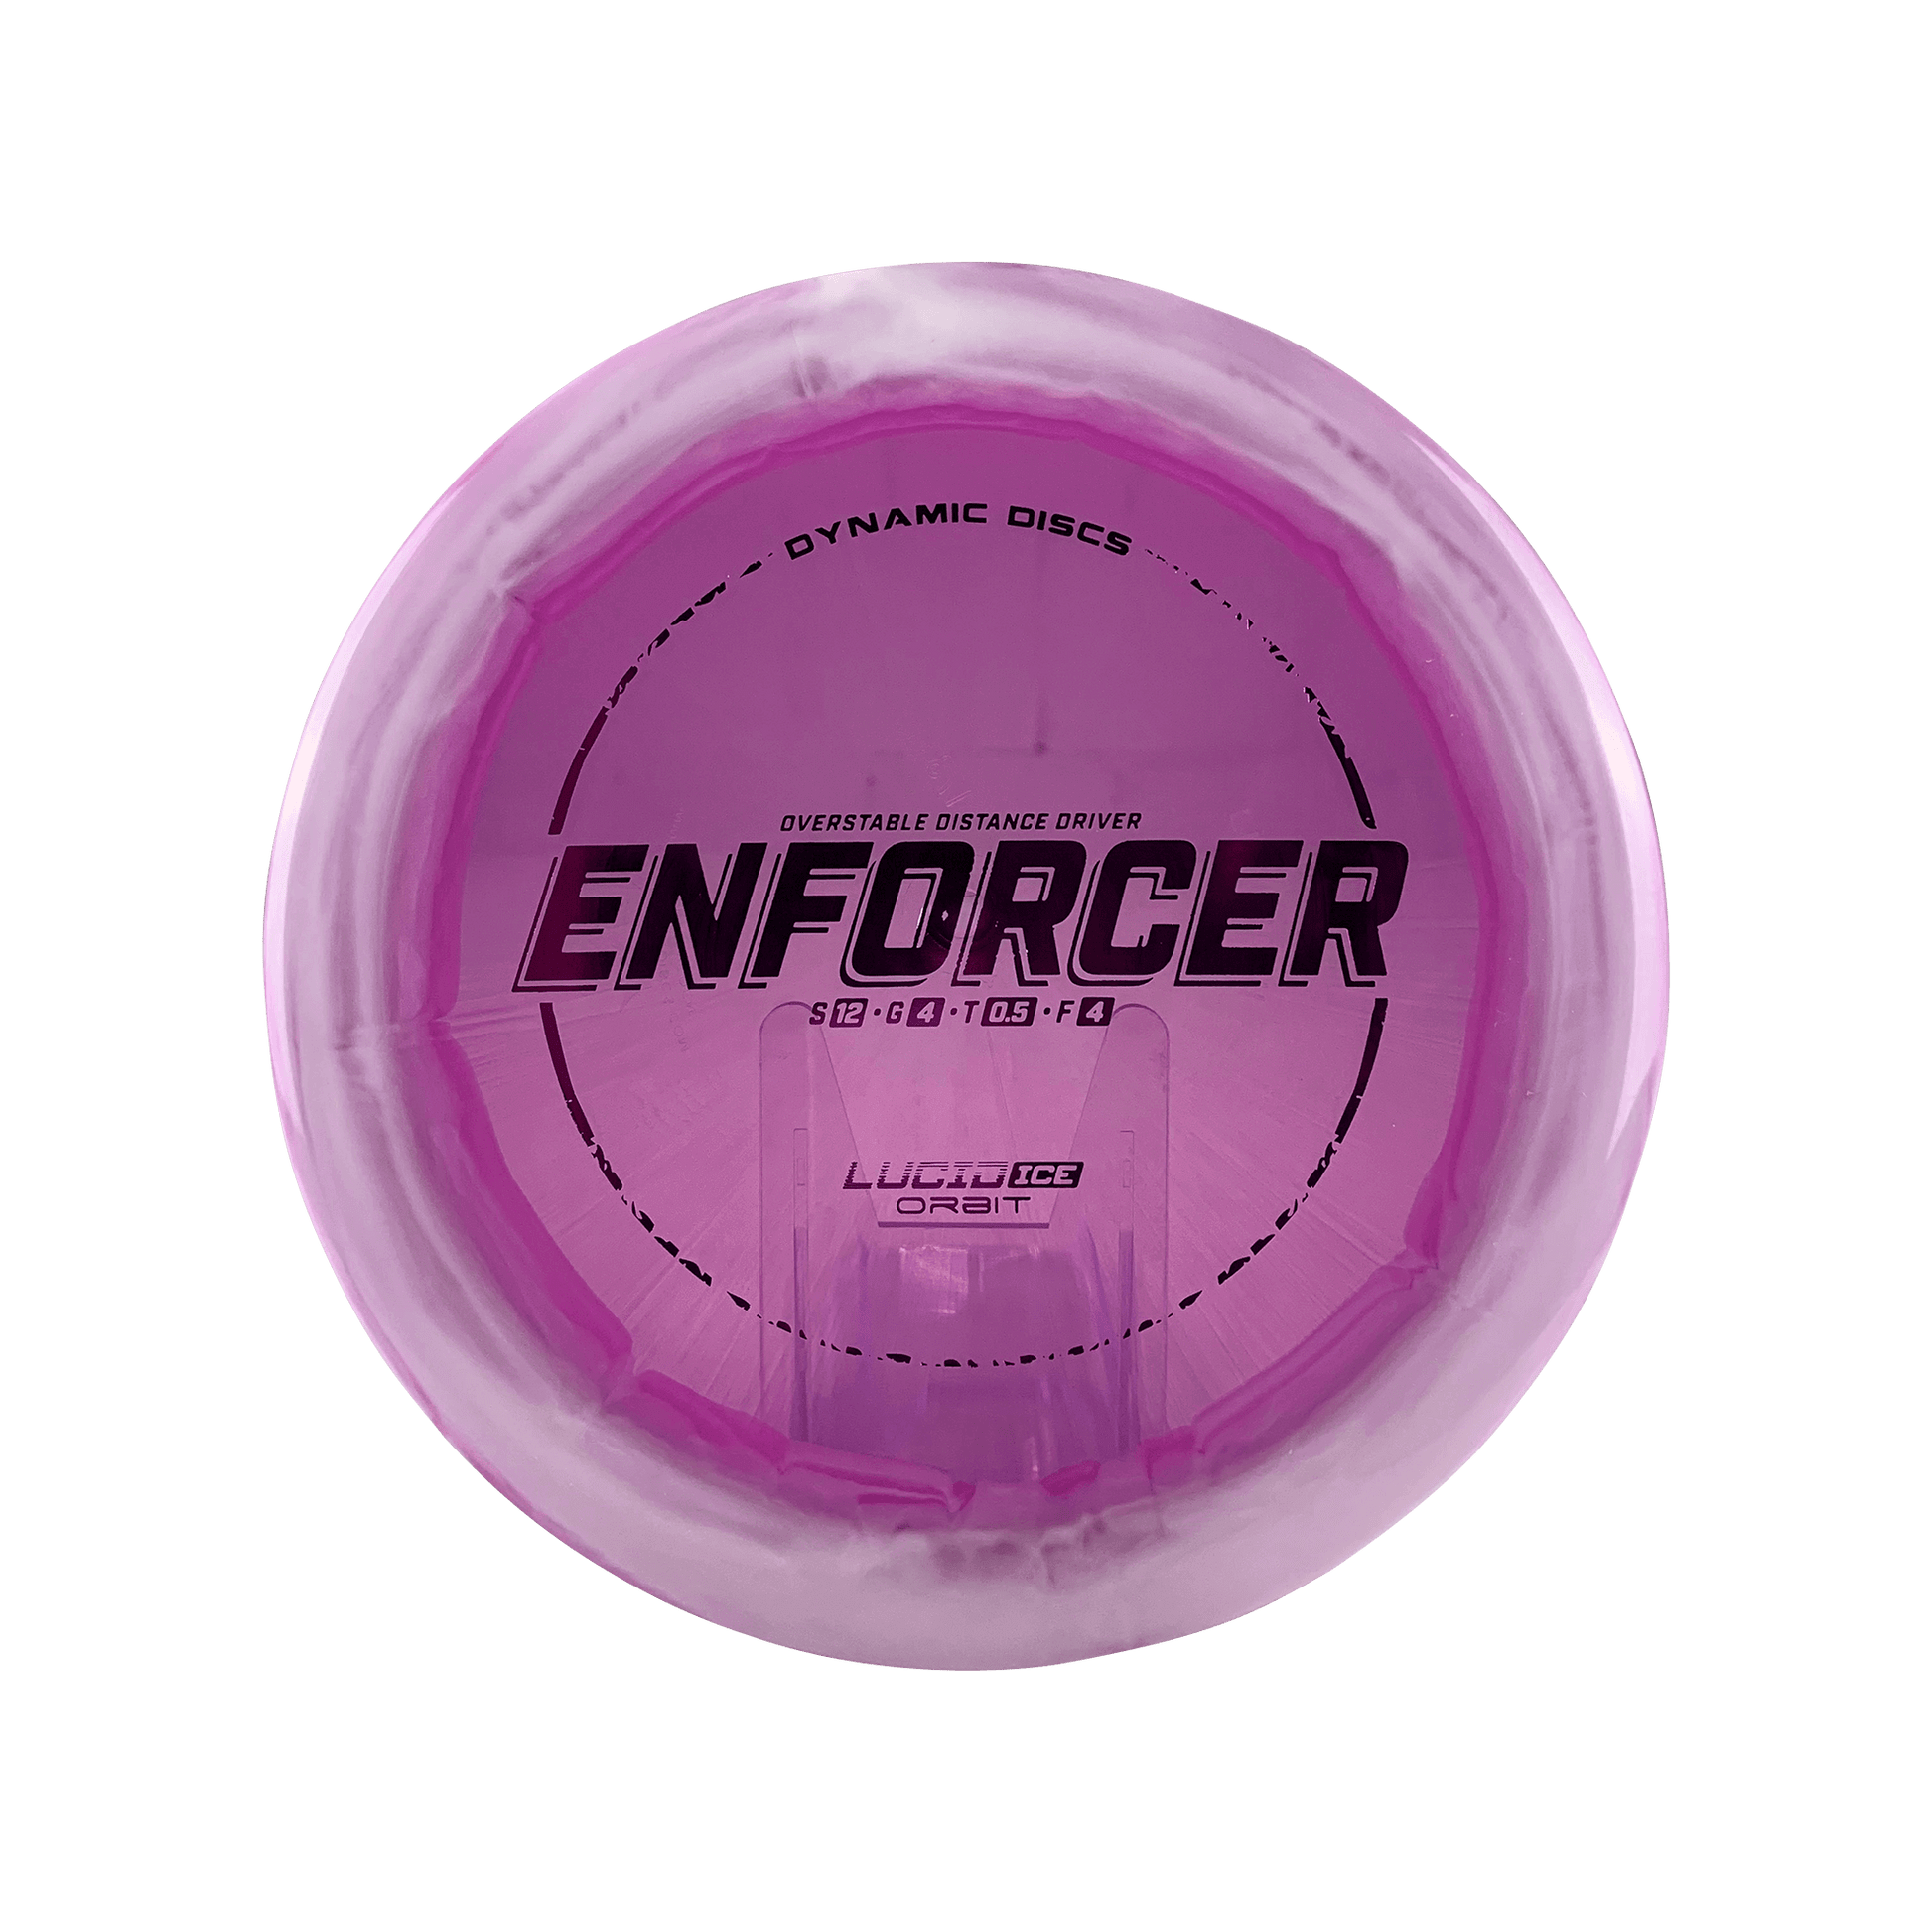 Lucid Ice Orbit Enforcer Disc Dynamic Discs multi / purple 173 